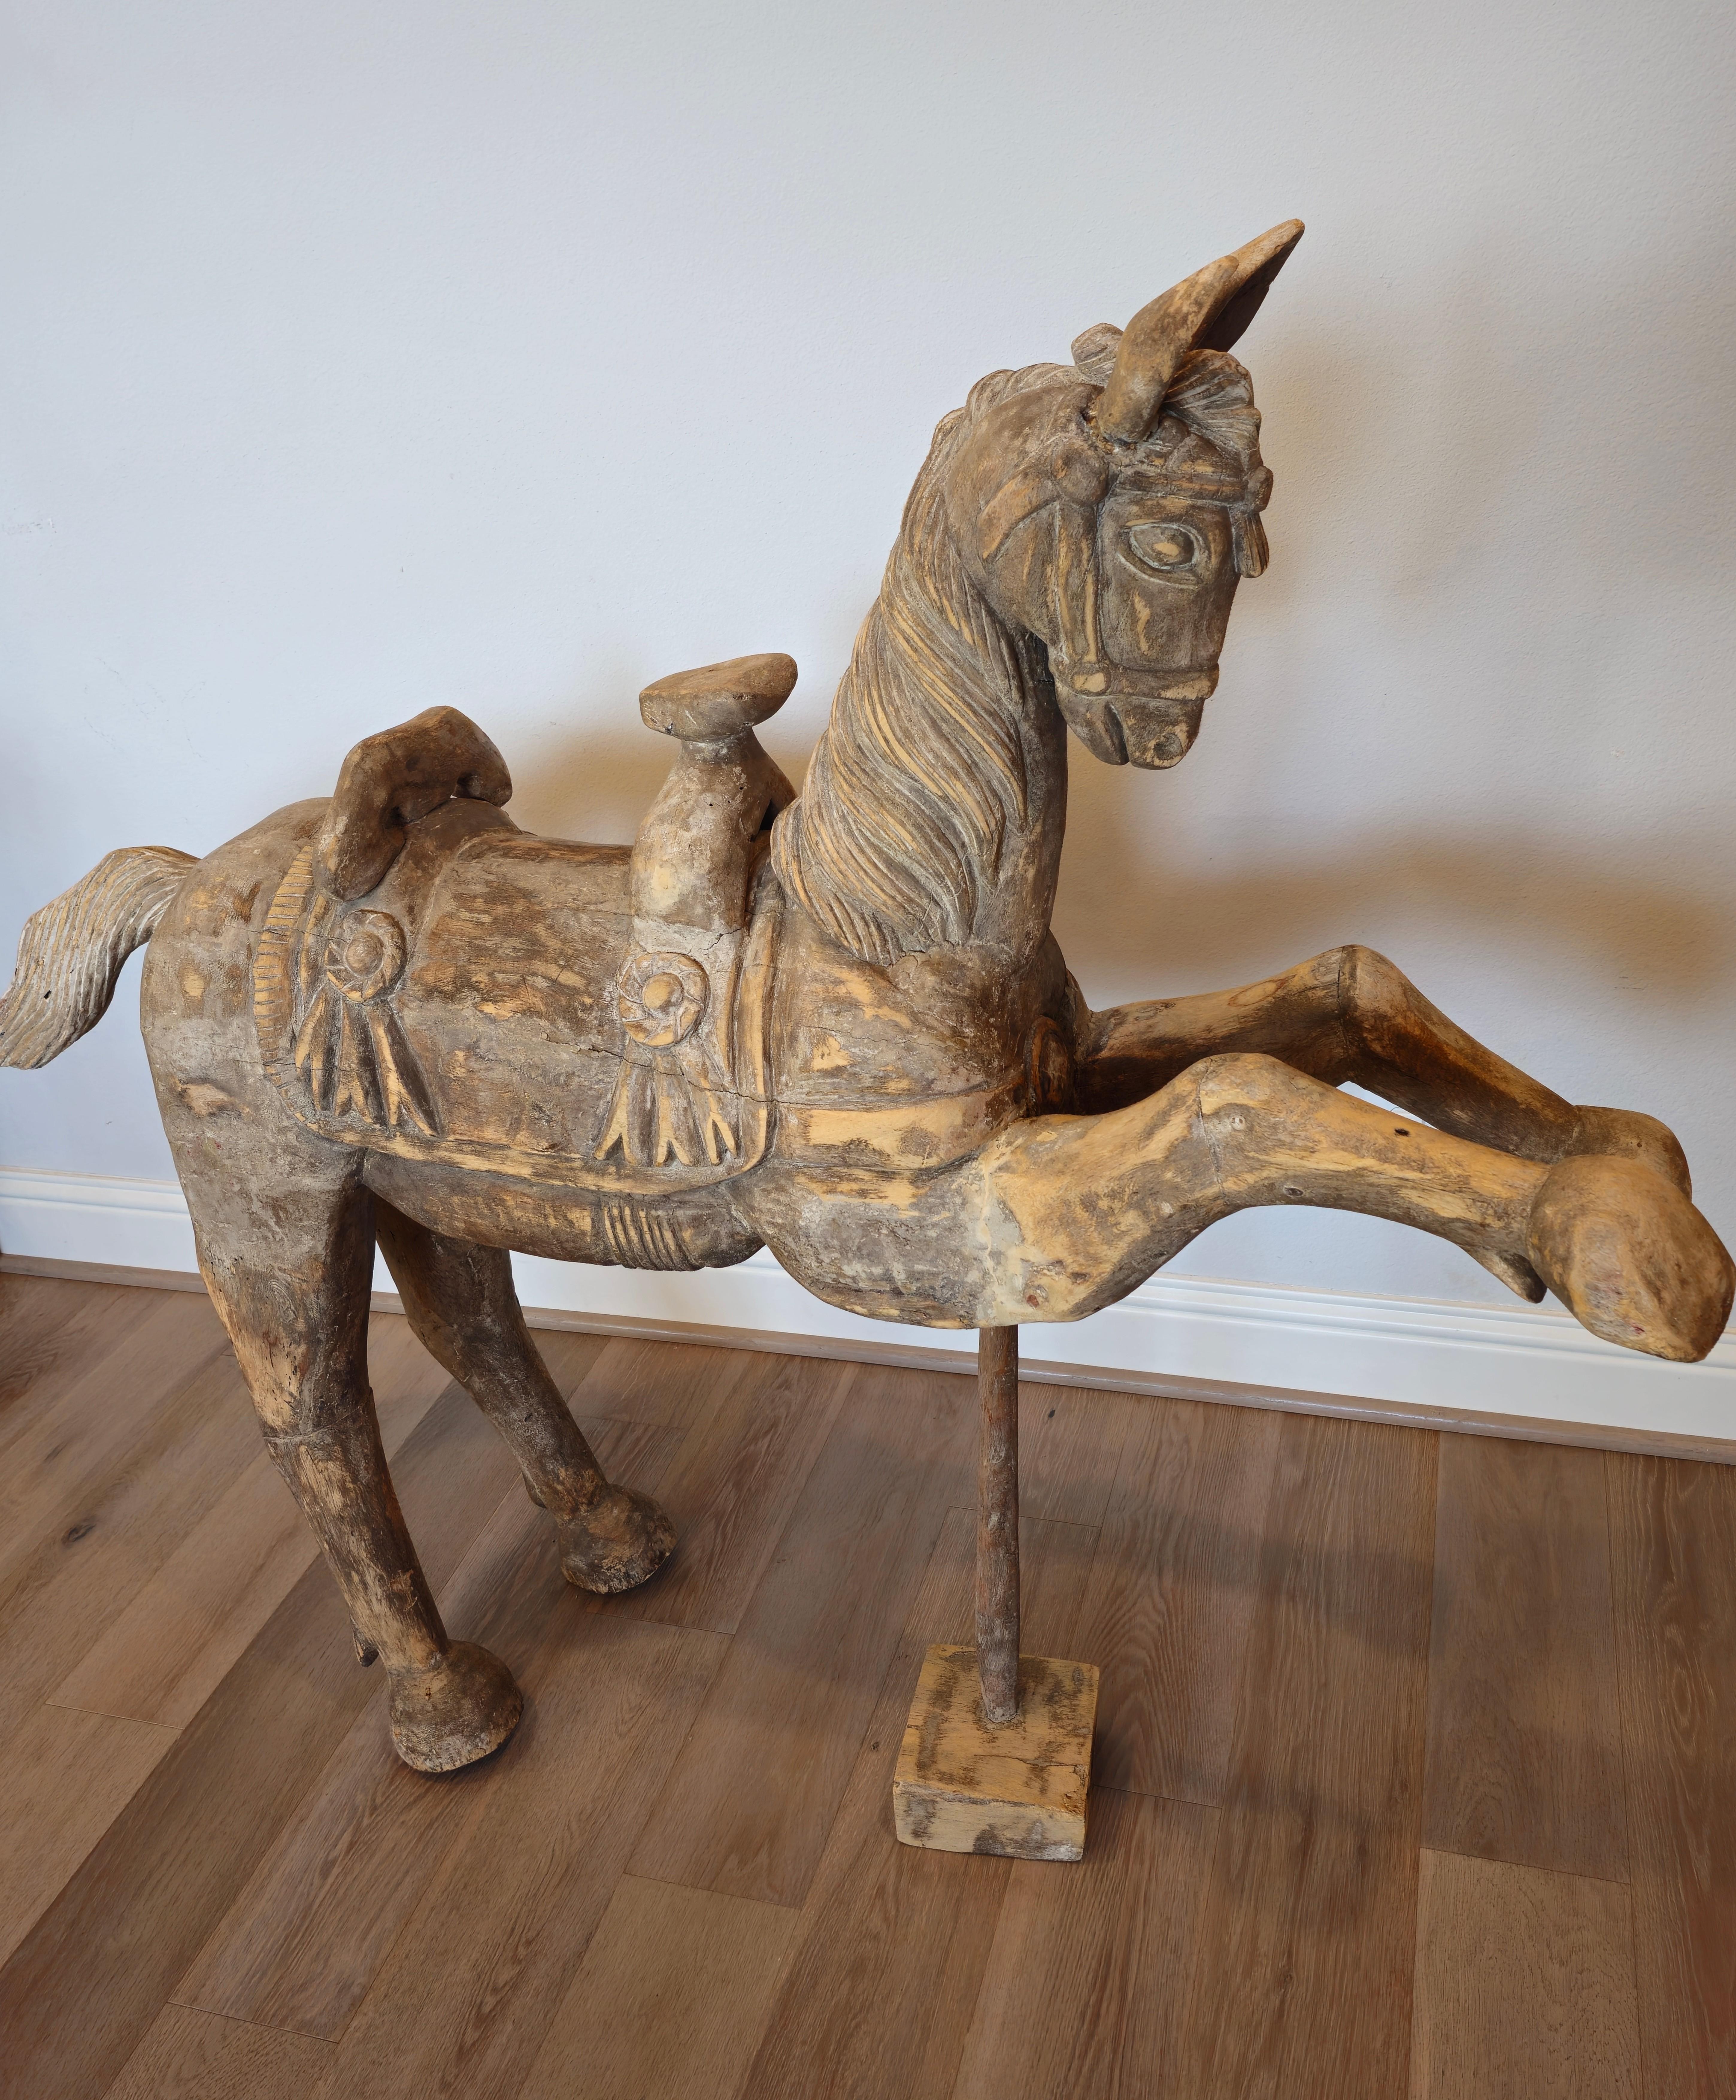 Eine große antike handgeschnitzte Pferdeskulptur aus Holz auf einem Ständer. Höchstwahrscheinlich aus Südostasien (Indonesien, Burma, Thailand), Anfang des 20. Jahrhunderts, ist die leichte, primitive Schnitzerei aus Weichholz außergewöhnlich gut